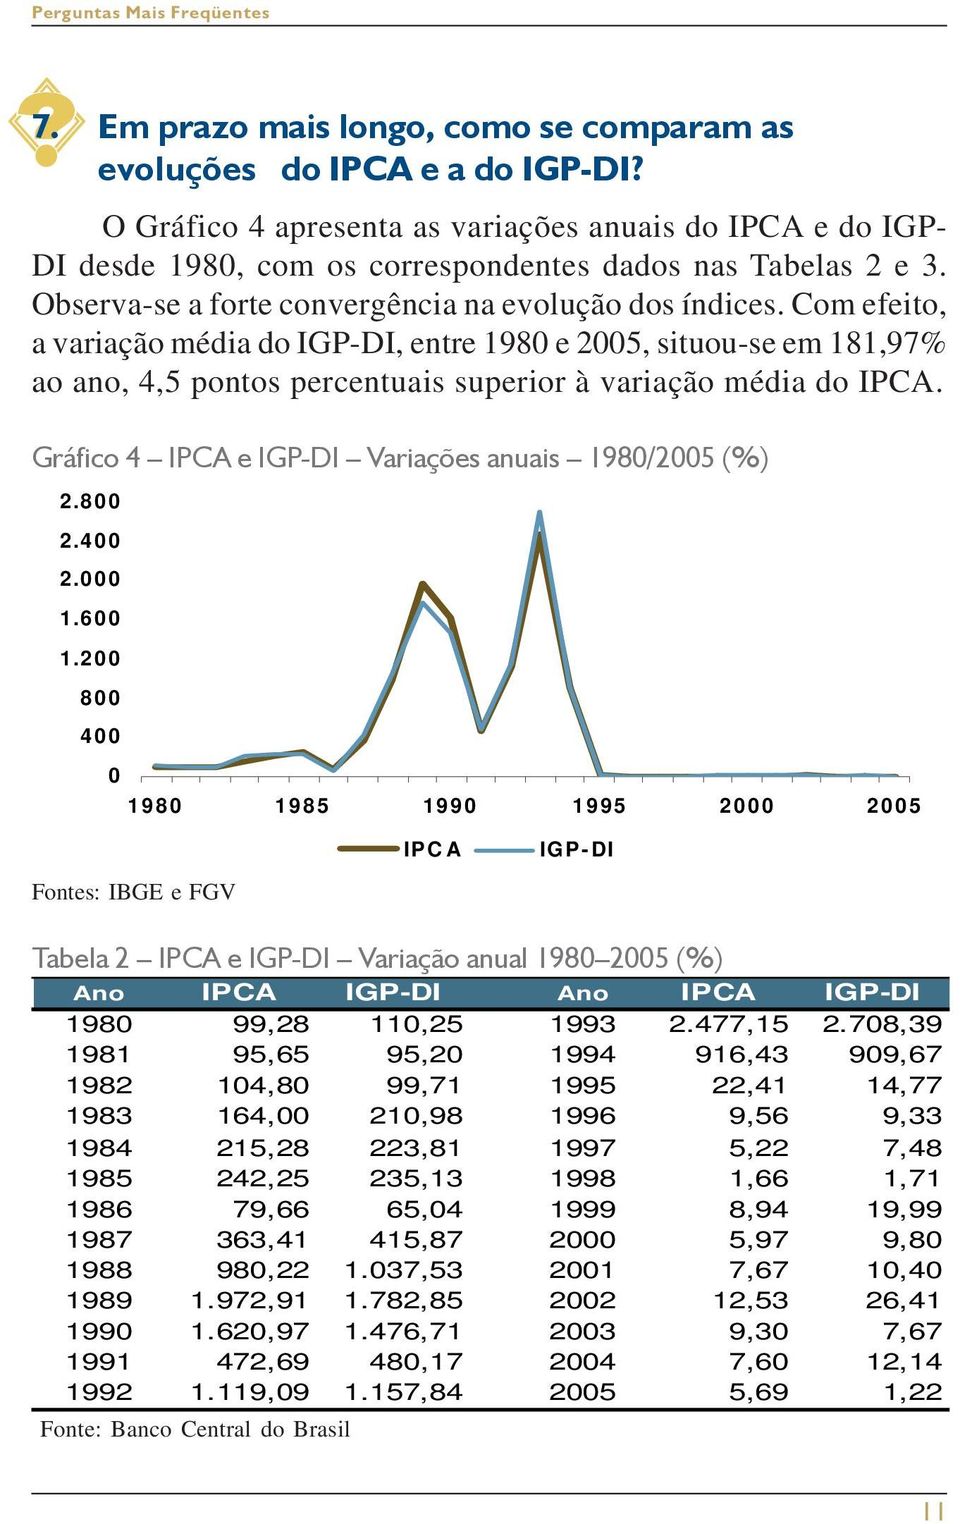 Com efeito, a variação média do IGP-DI, entre 1980 e 2005, situou-se em 181,97% ao ano, 4,5 pontos percentuais superior à variação média do IPCA.